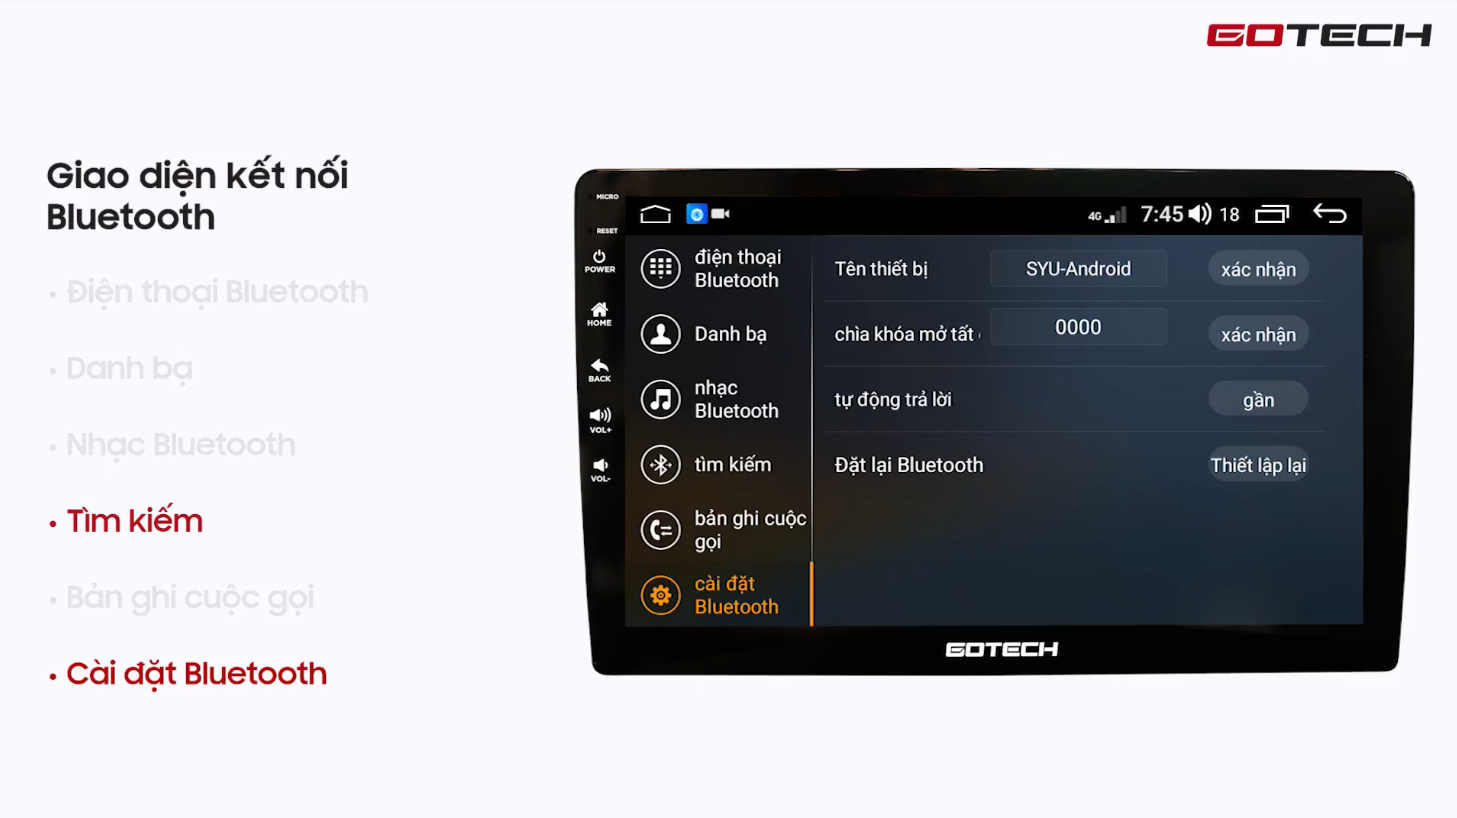 Hướng dẫn kết nối Bluetooth với điện thoại trên màn hình Gotech